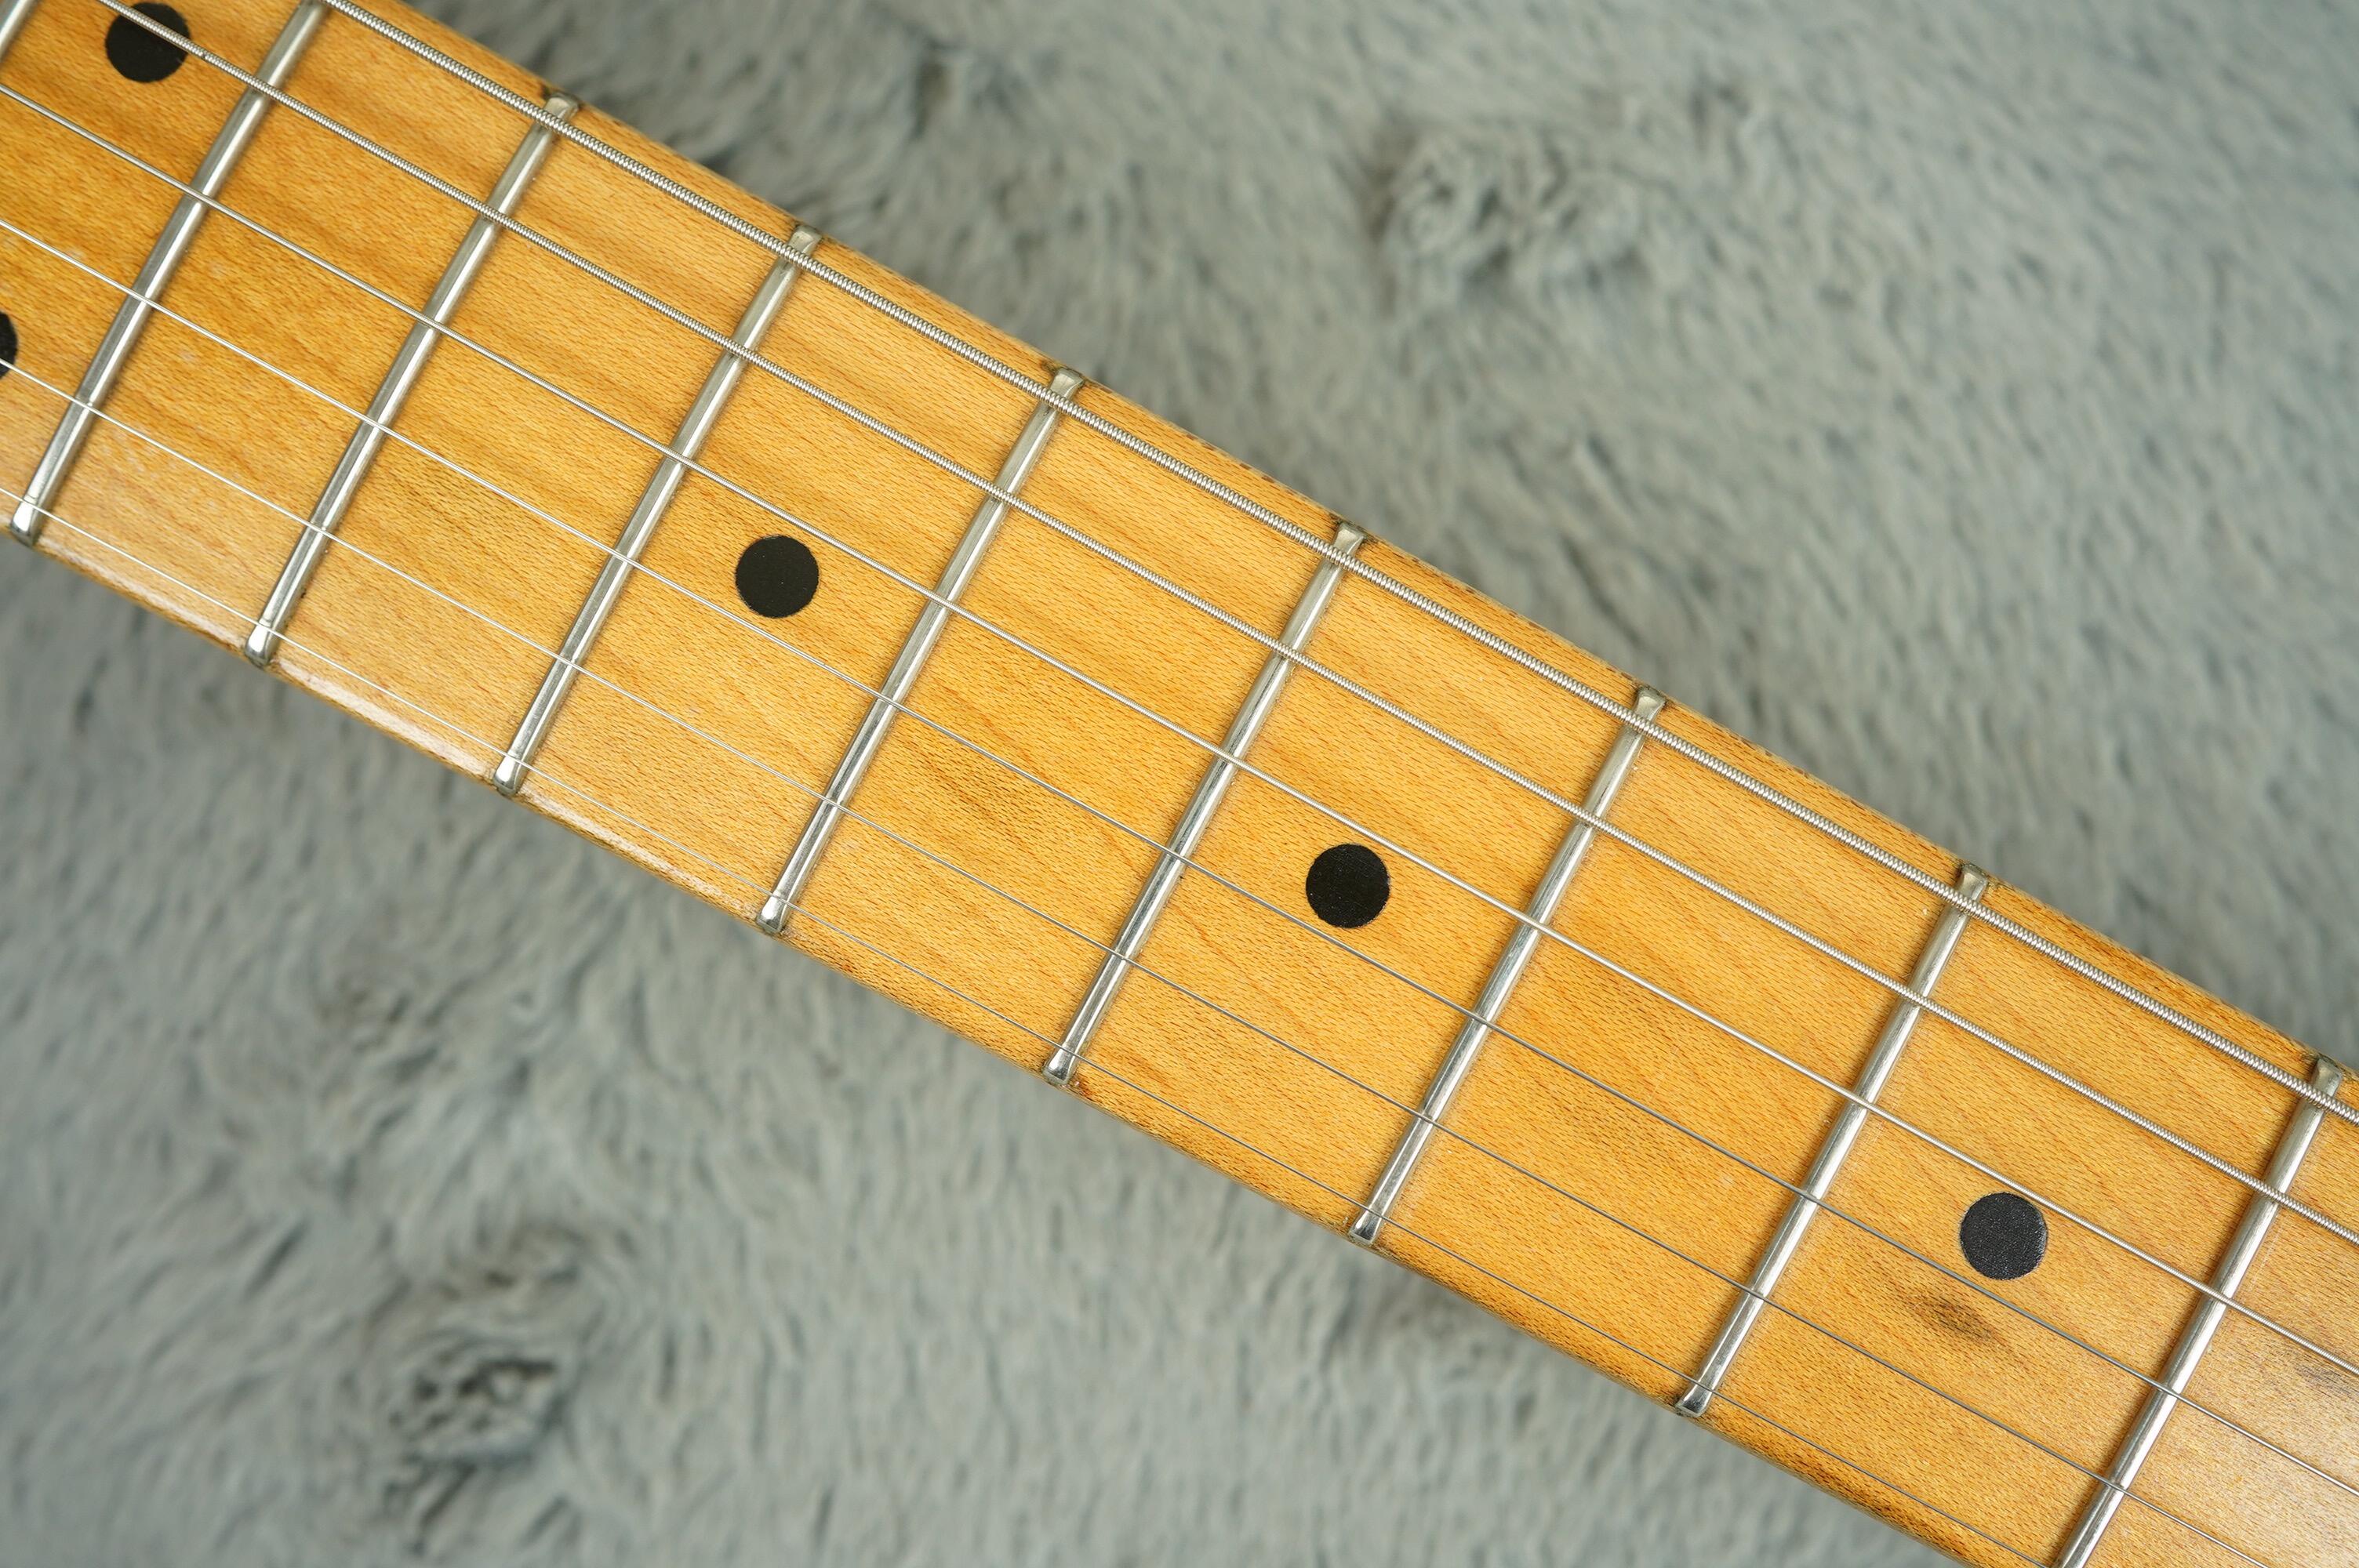 1959 Fender Stratocaster Sunburst